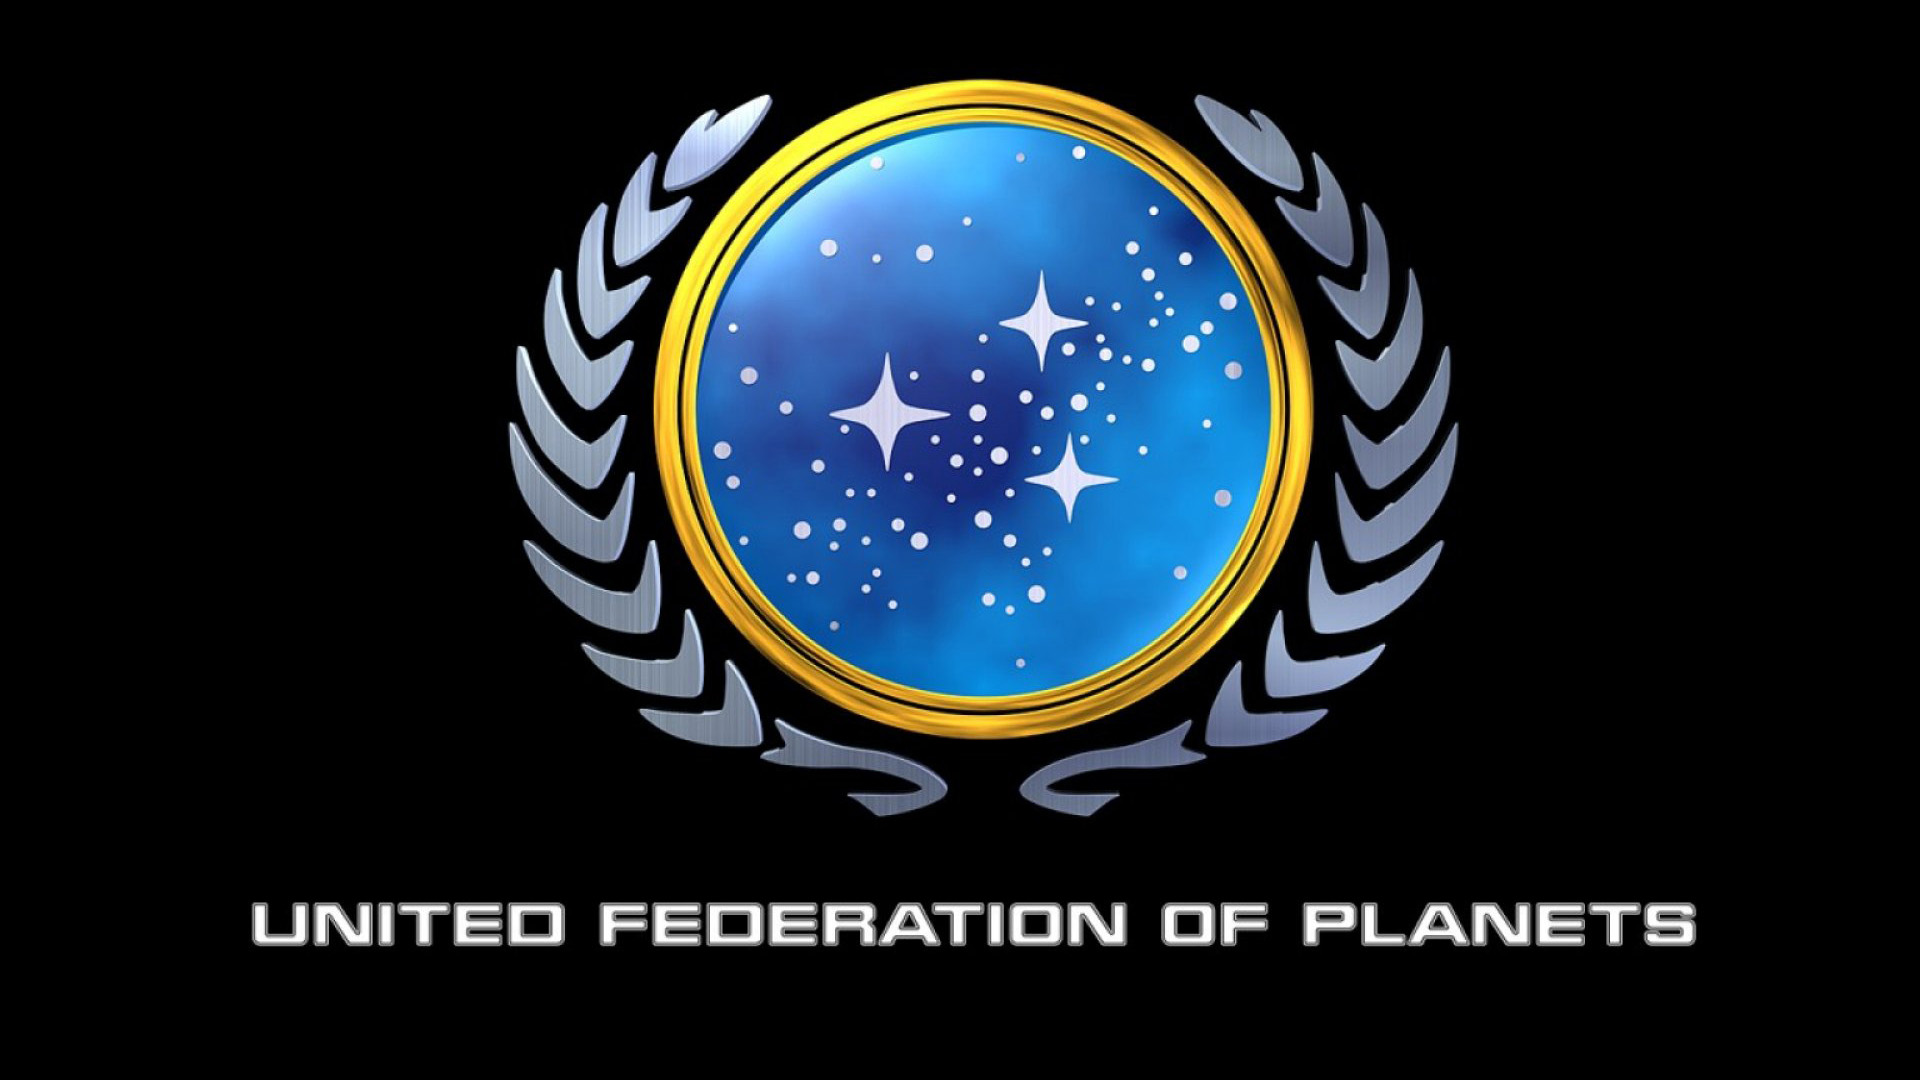 fiction, Star Trek, symbol, logos, United Federation of Planets, Star Trek logos - desktop wallpaper